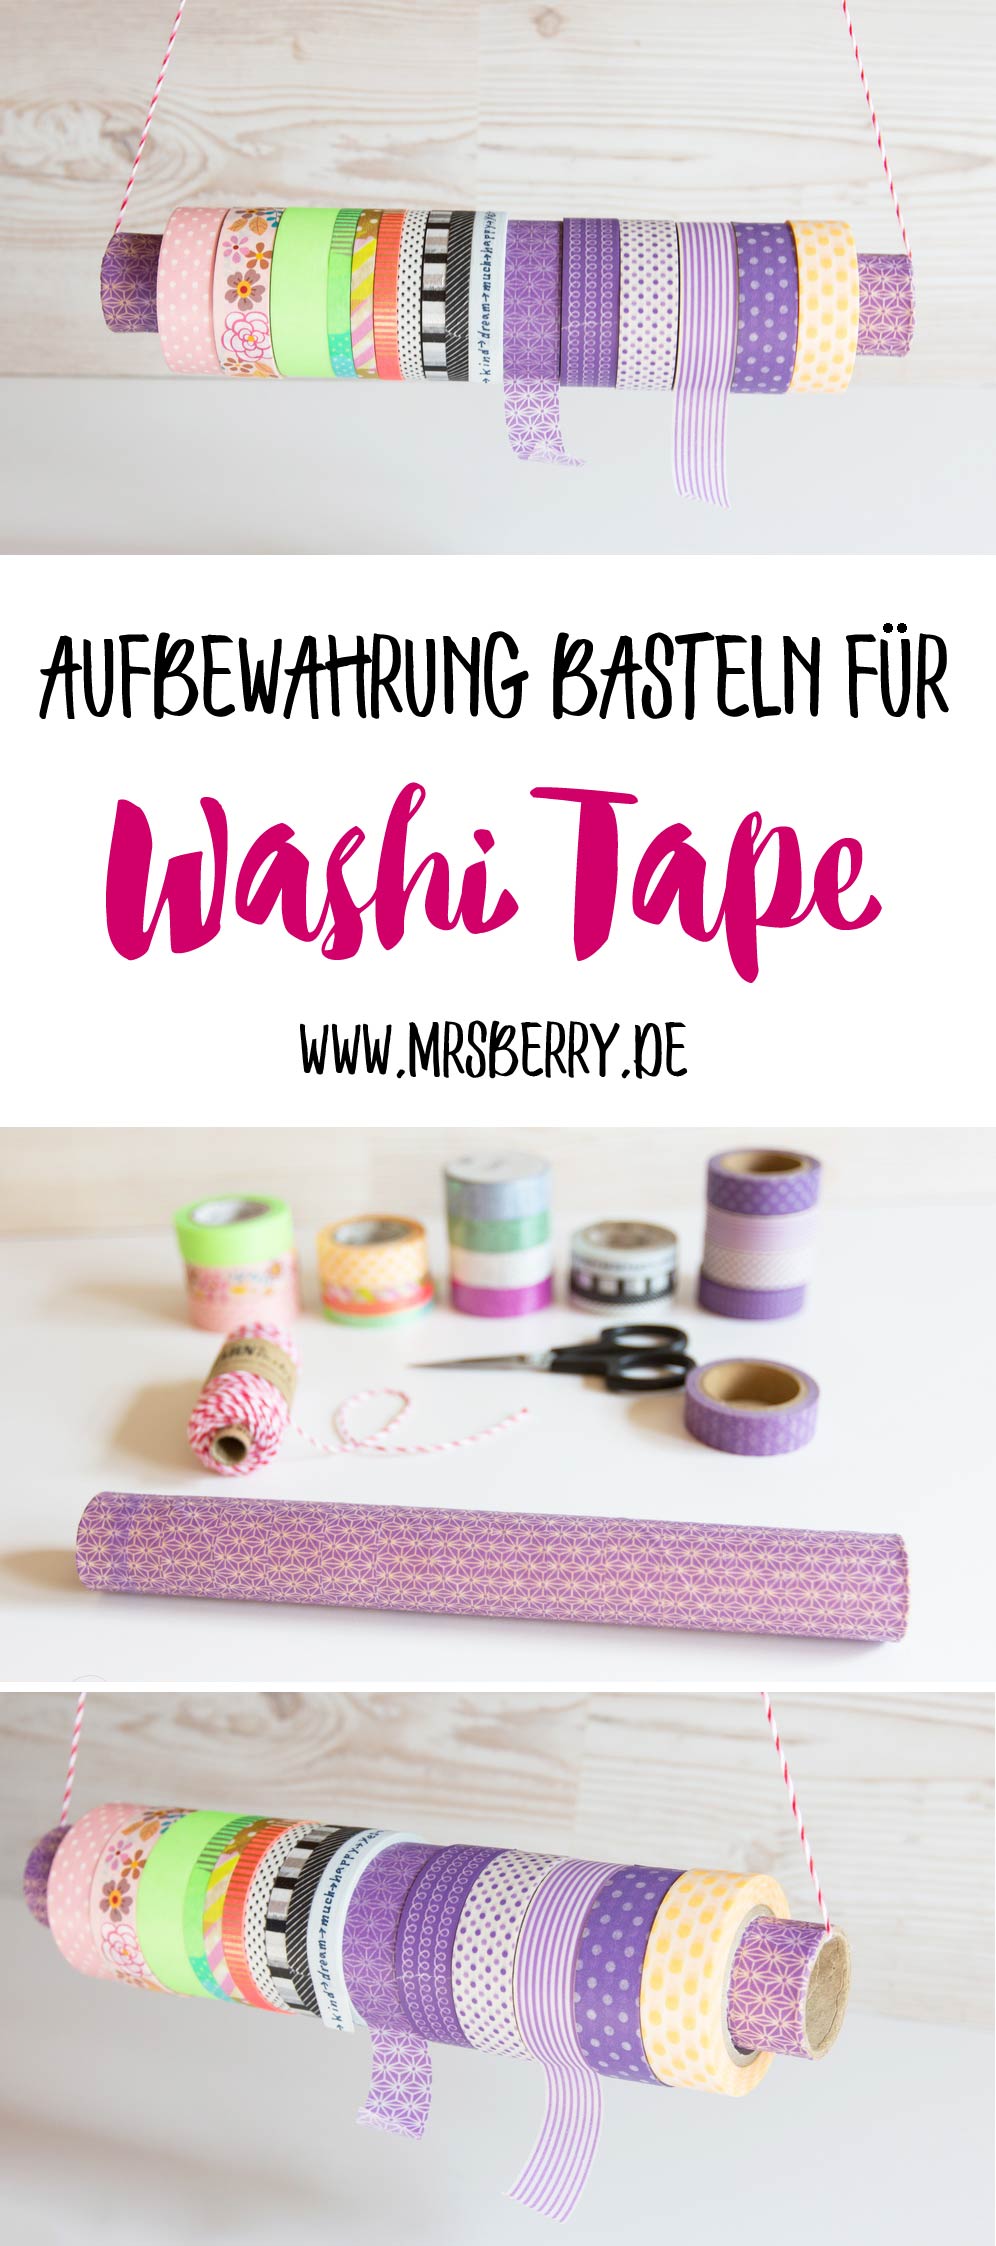 DIY Idee: Aufbewahrung für Washi Tape / Masking Tape basteln.